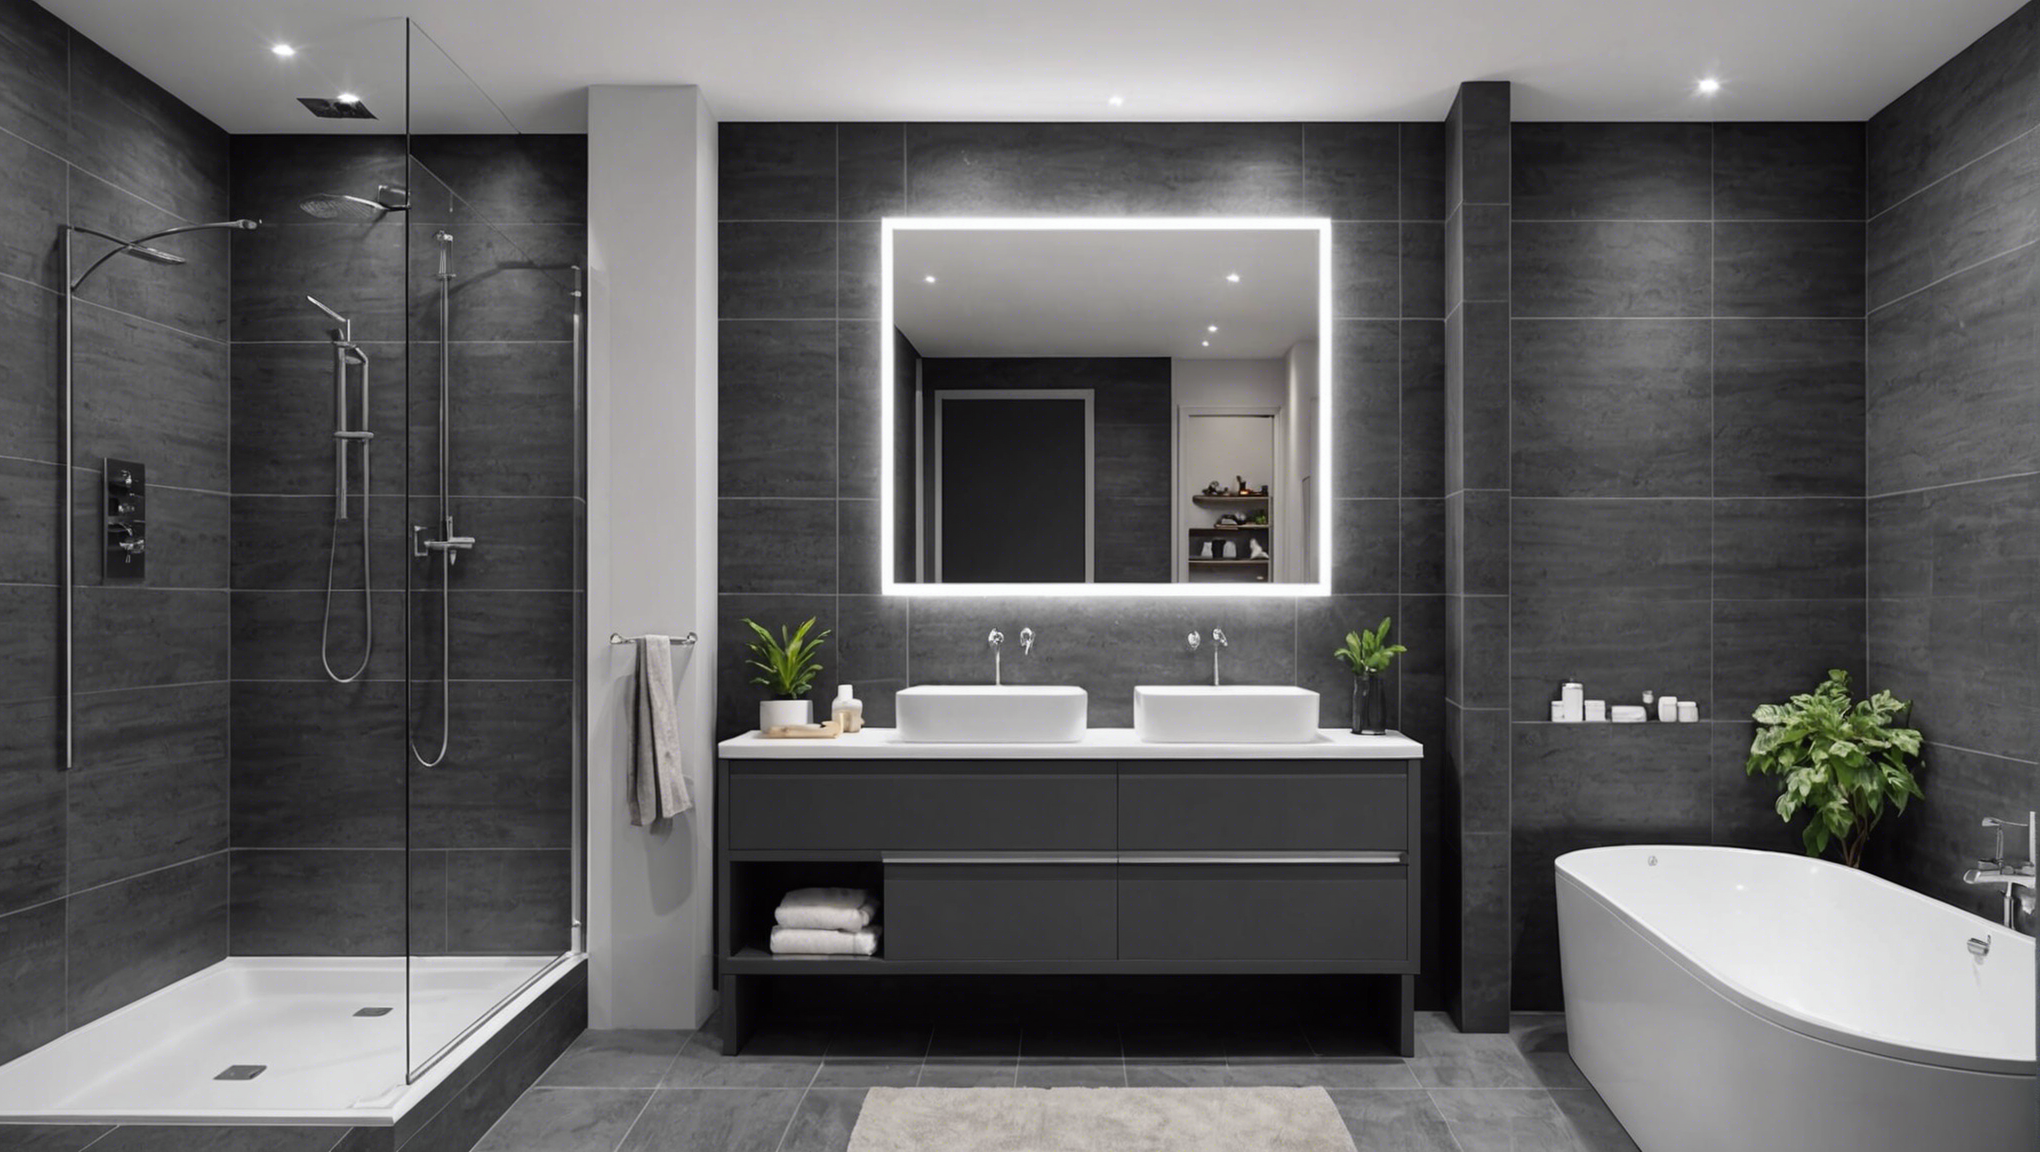 découvrez comment métamorphoser votre salle de bain en un lieu moderne et raffiné avec nos astuces pour une élégance inégalée.